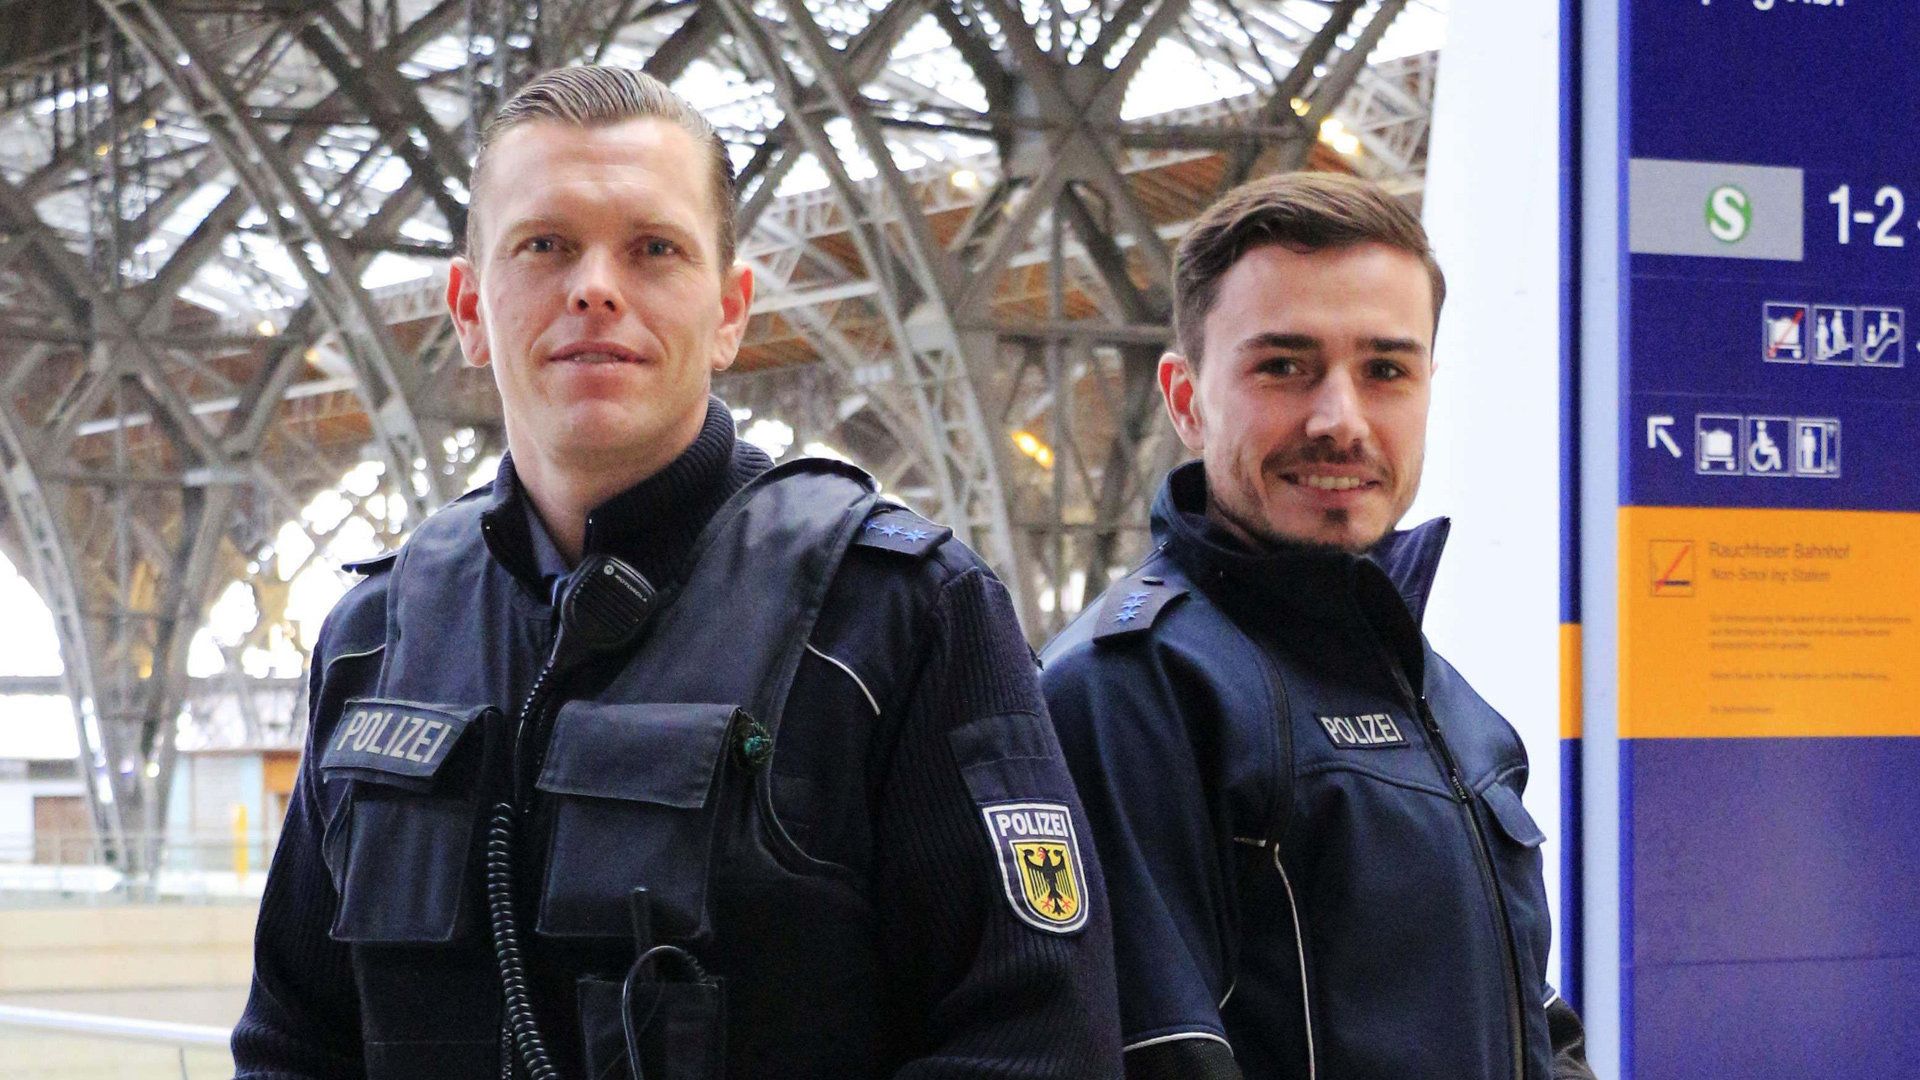 Großkontrolle auf der A2 - Polizei Braunschweig